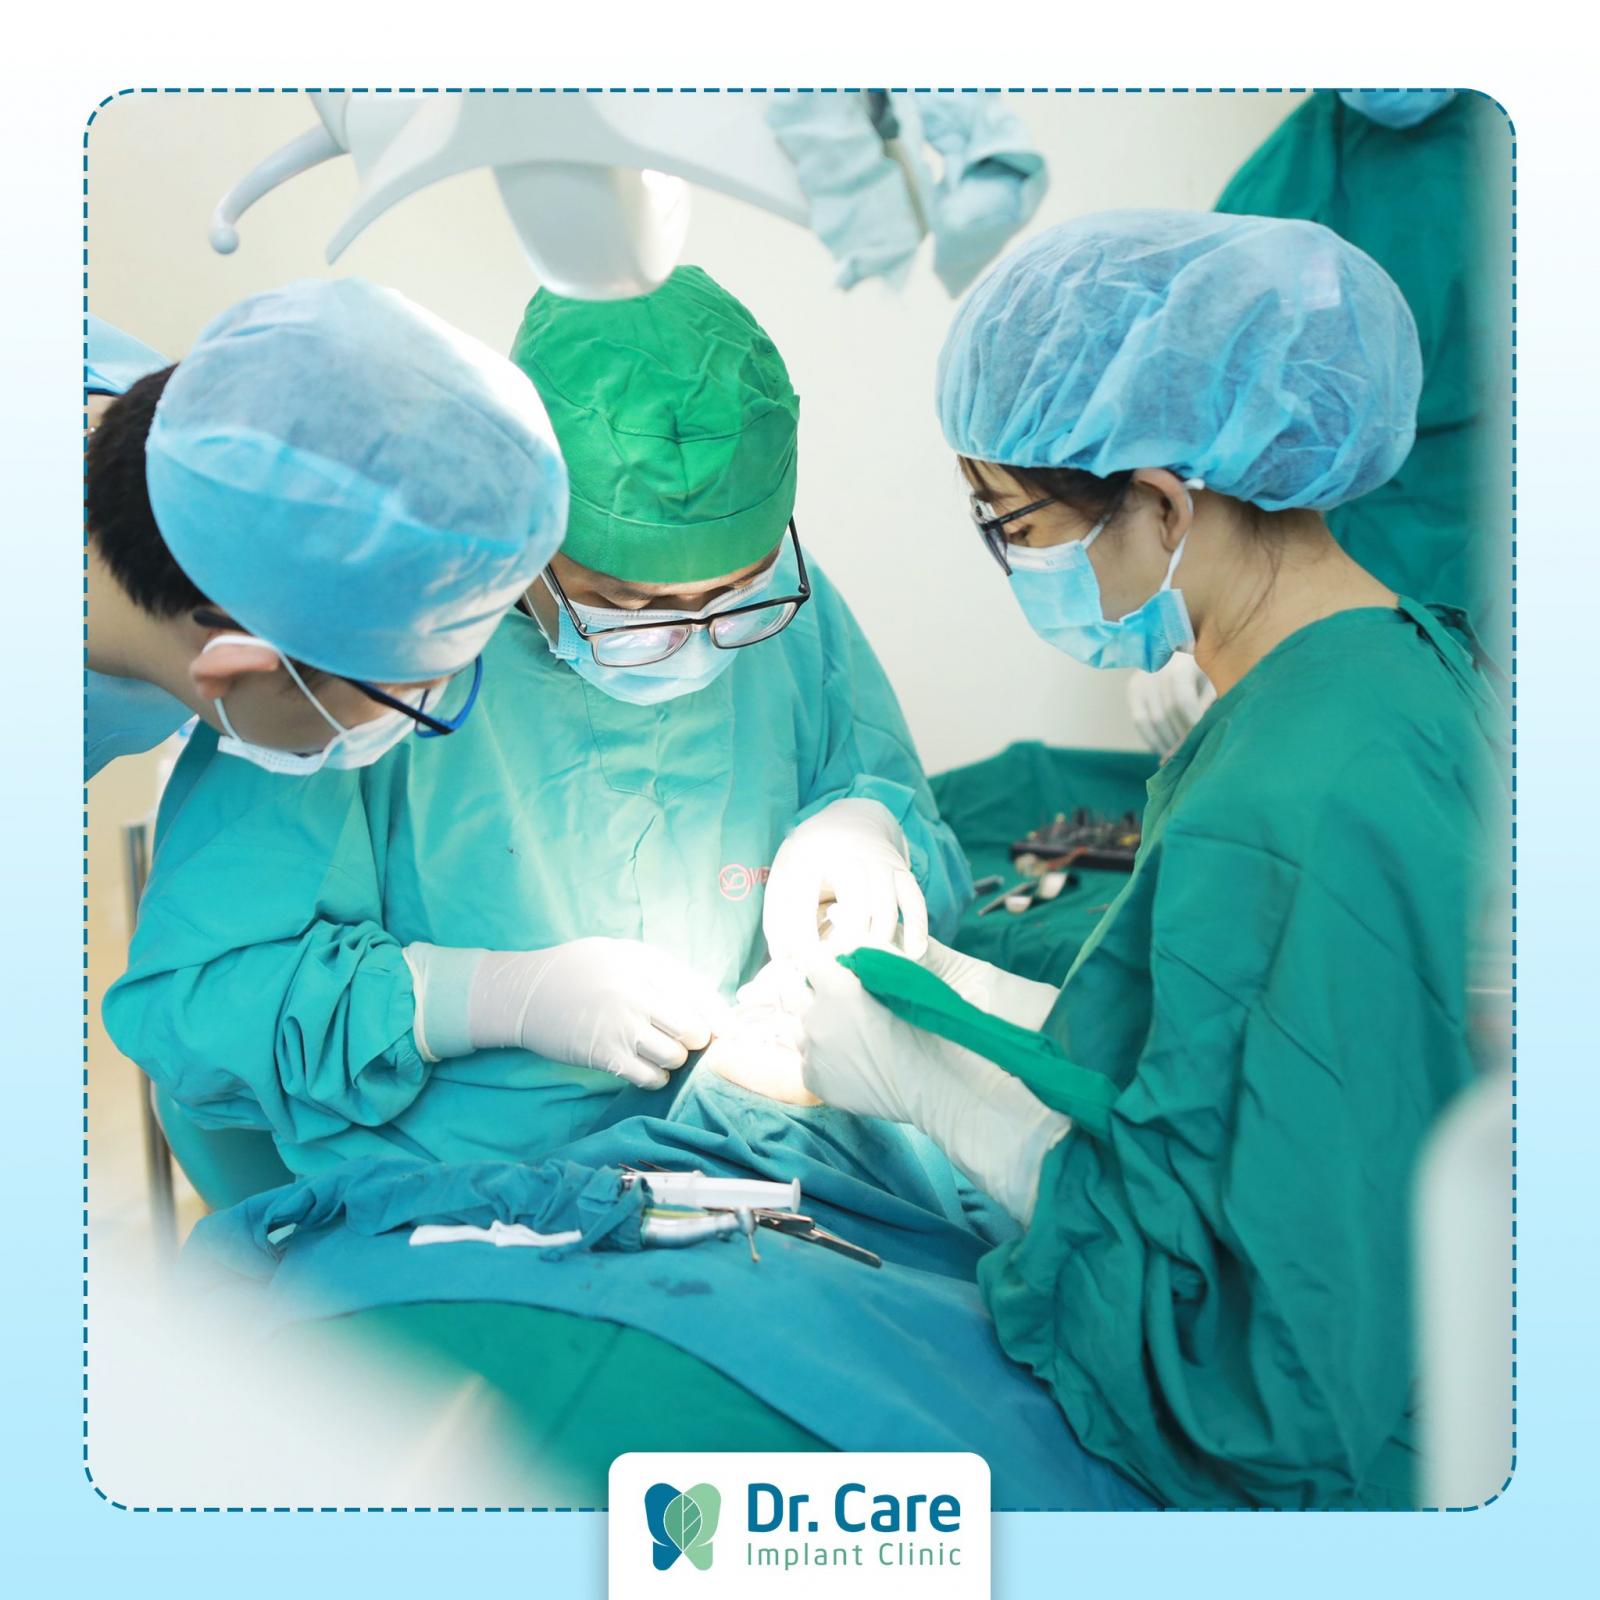 Dr. Care - Nha khoa chuyên sâu trồng răng Implant dành riêng cho người trung niên tại Việt Nam cam kết 100% khách hàng trồng răng tại Dr. Care đều được bảo hành và chăm sóc trọn đời.